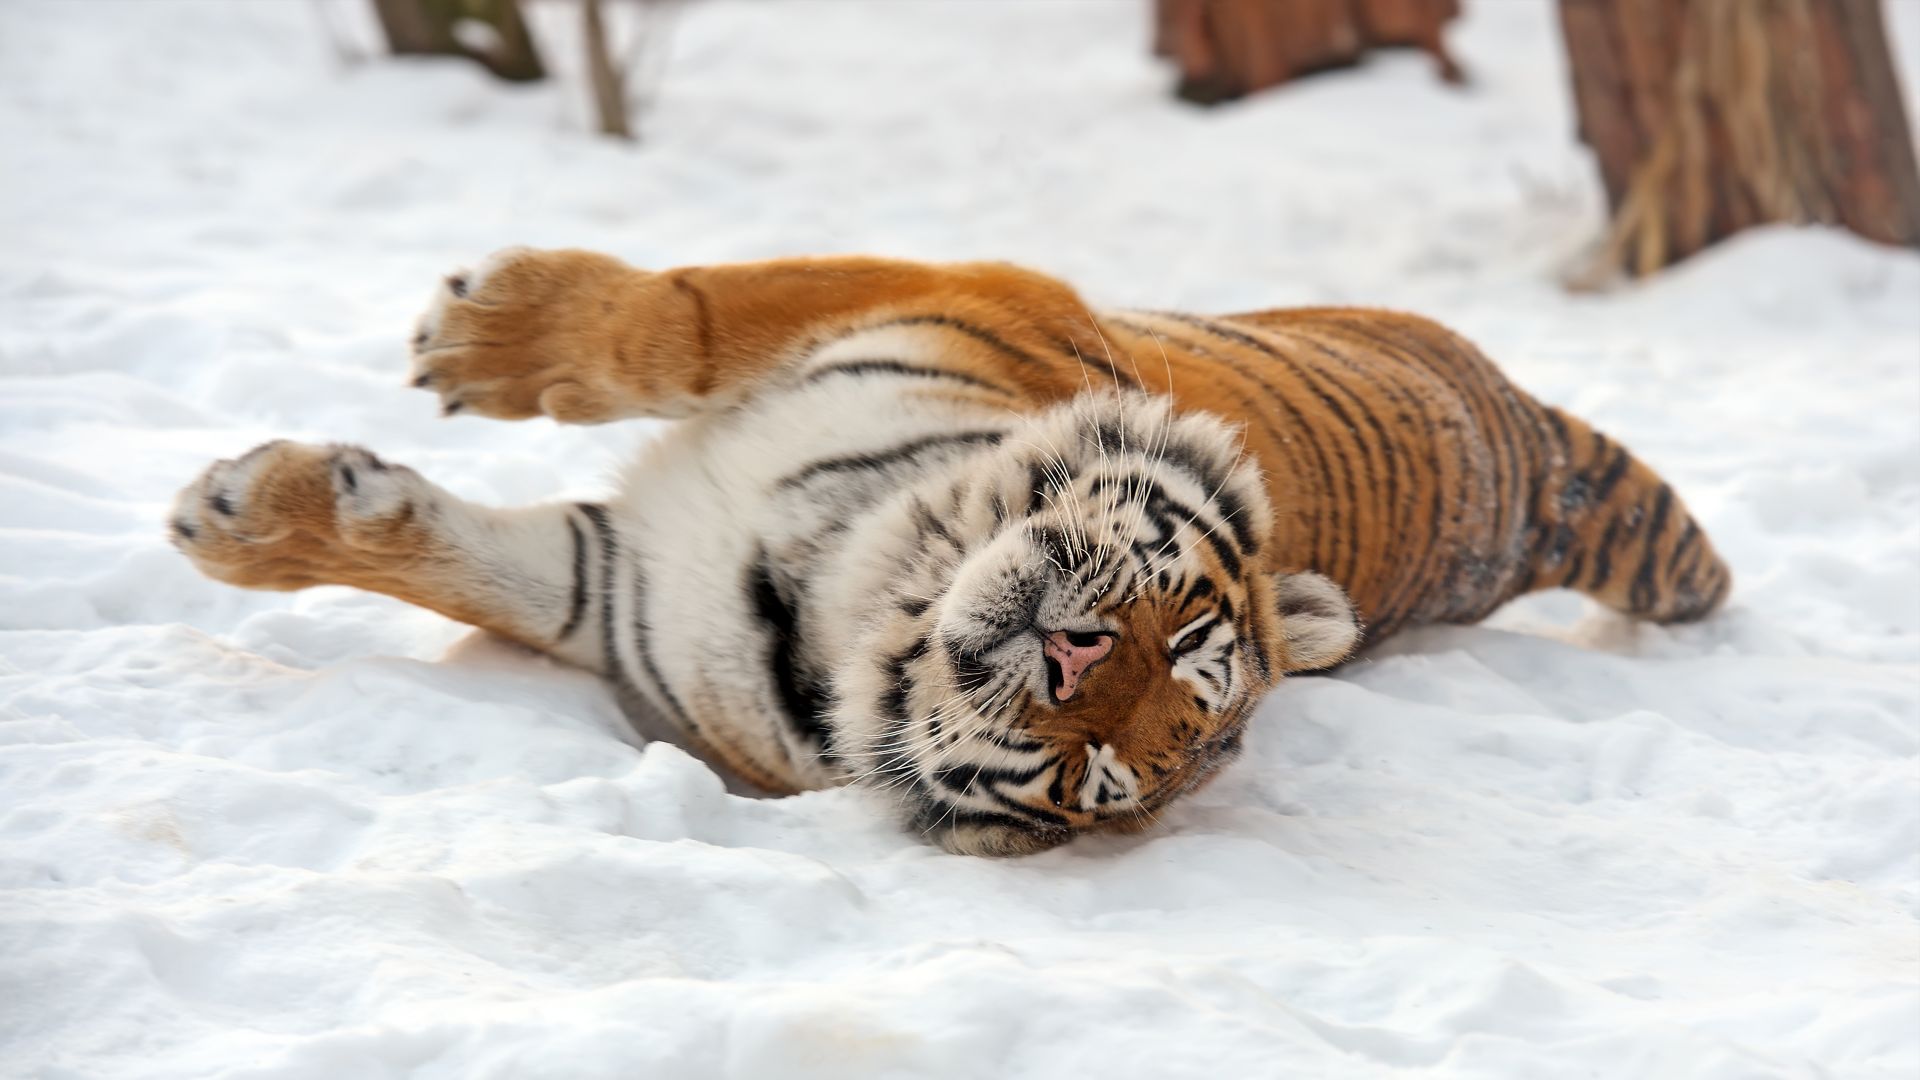 Tiger, wild, animal (horizontal)